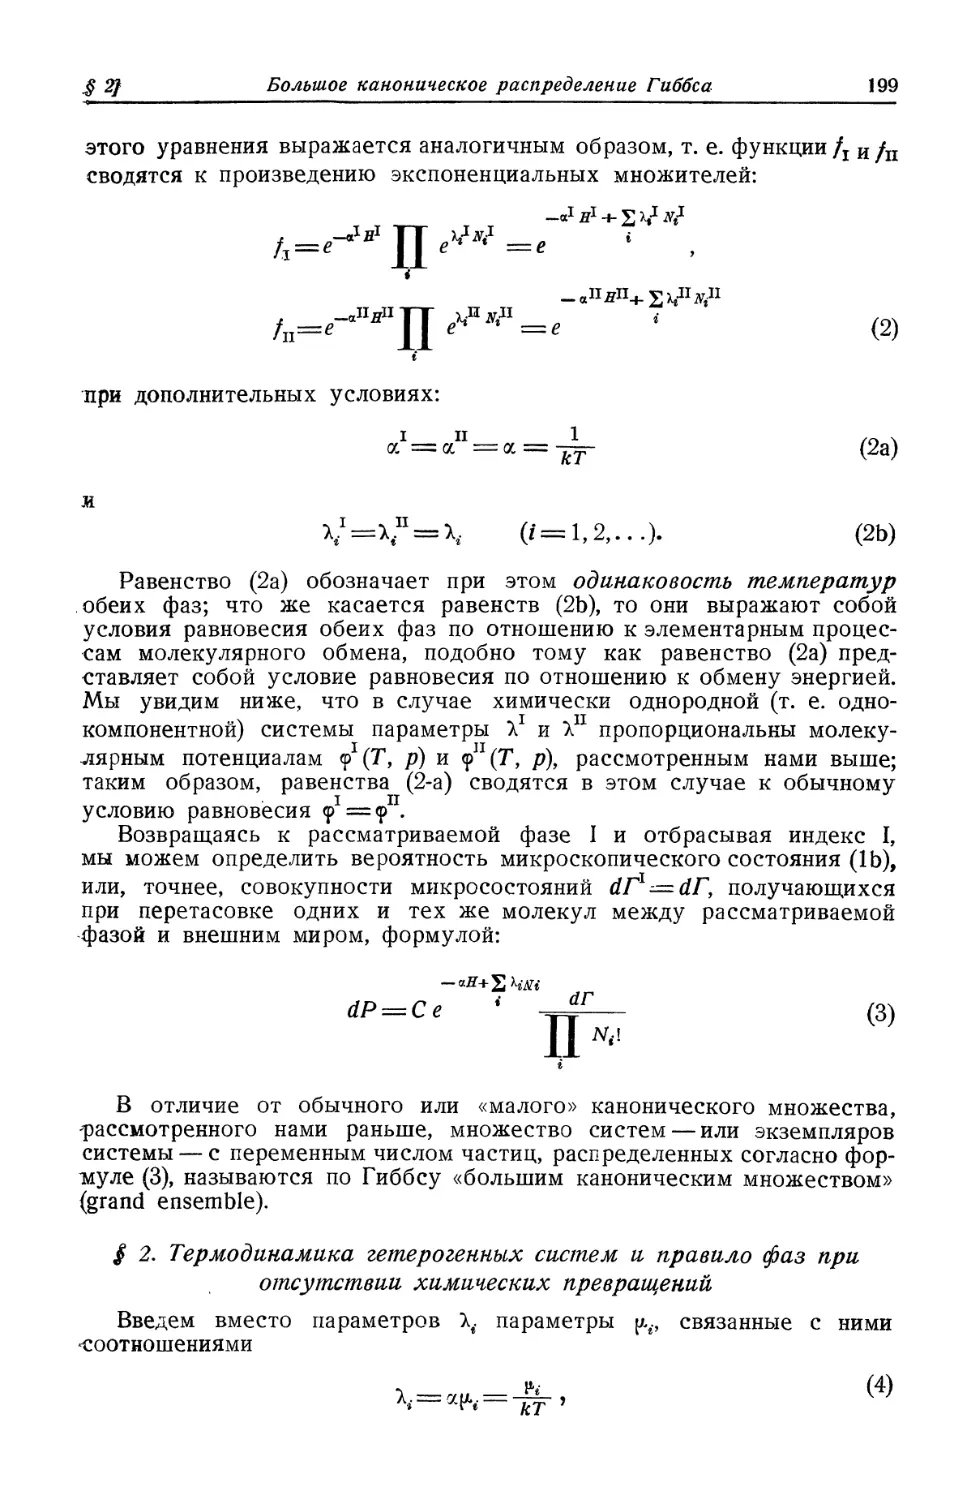 § 2. Термодинамика гетерогенных систем и правило фаз при отсутствии химических превращений